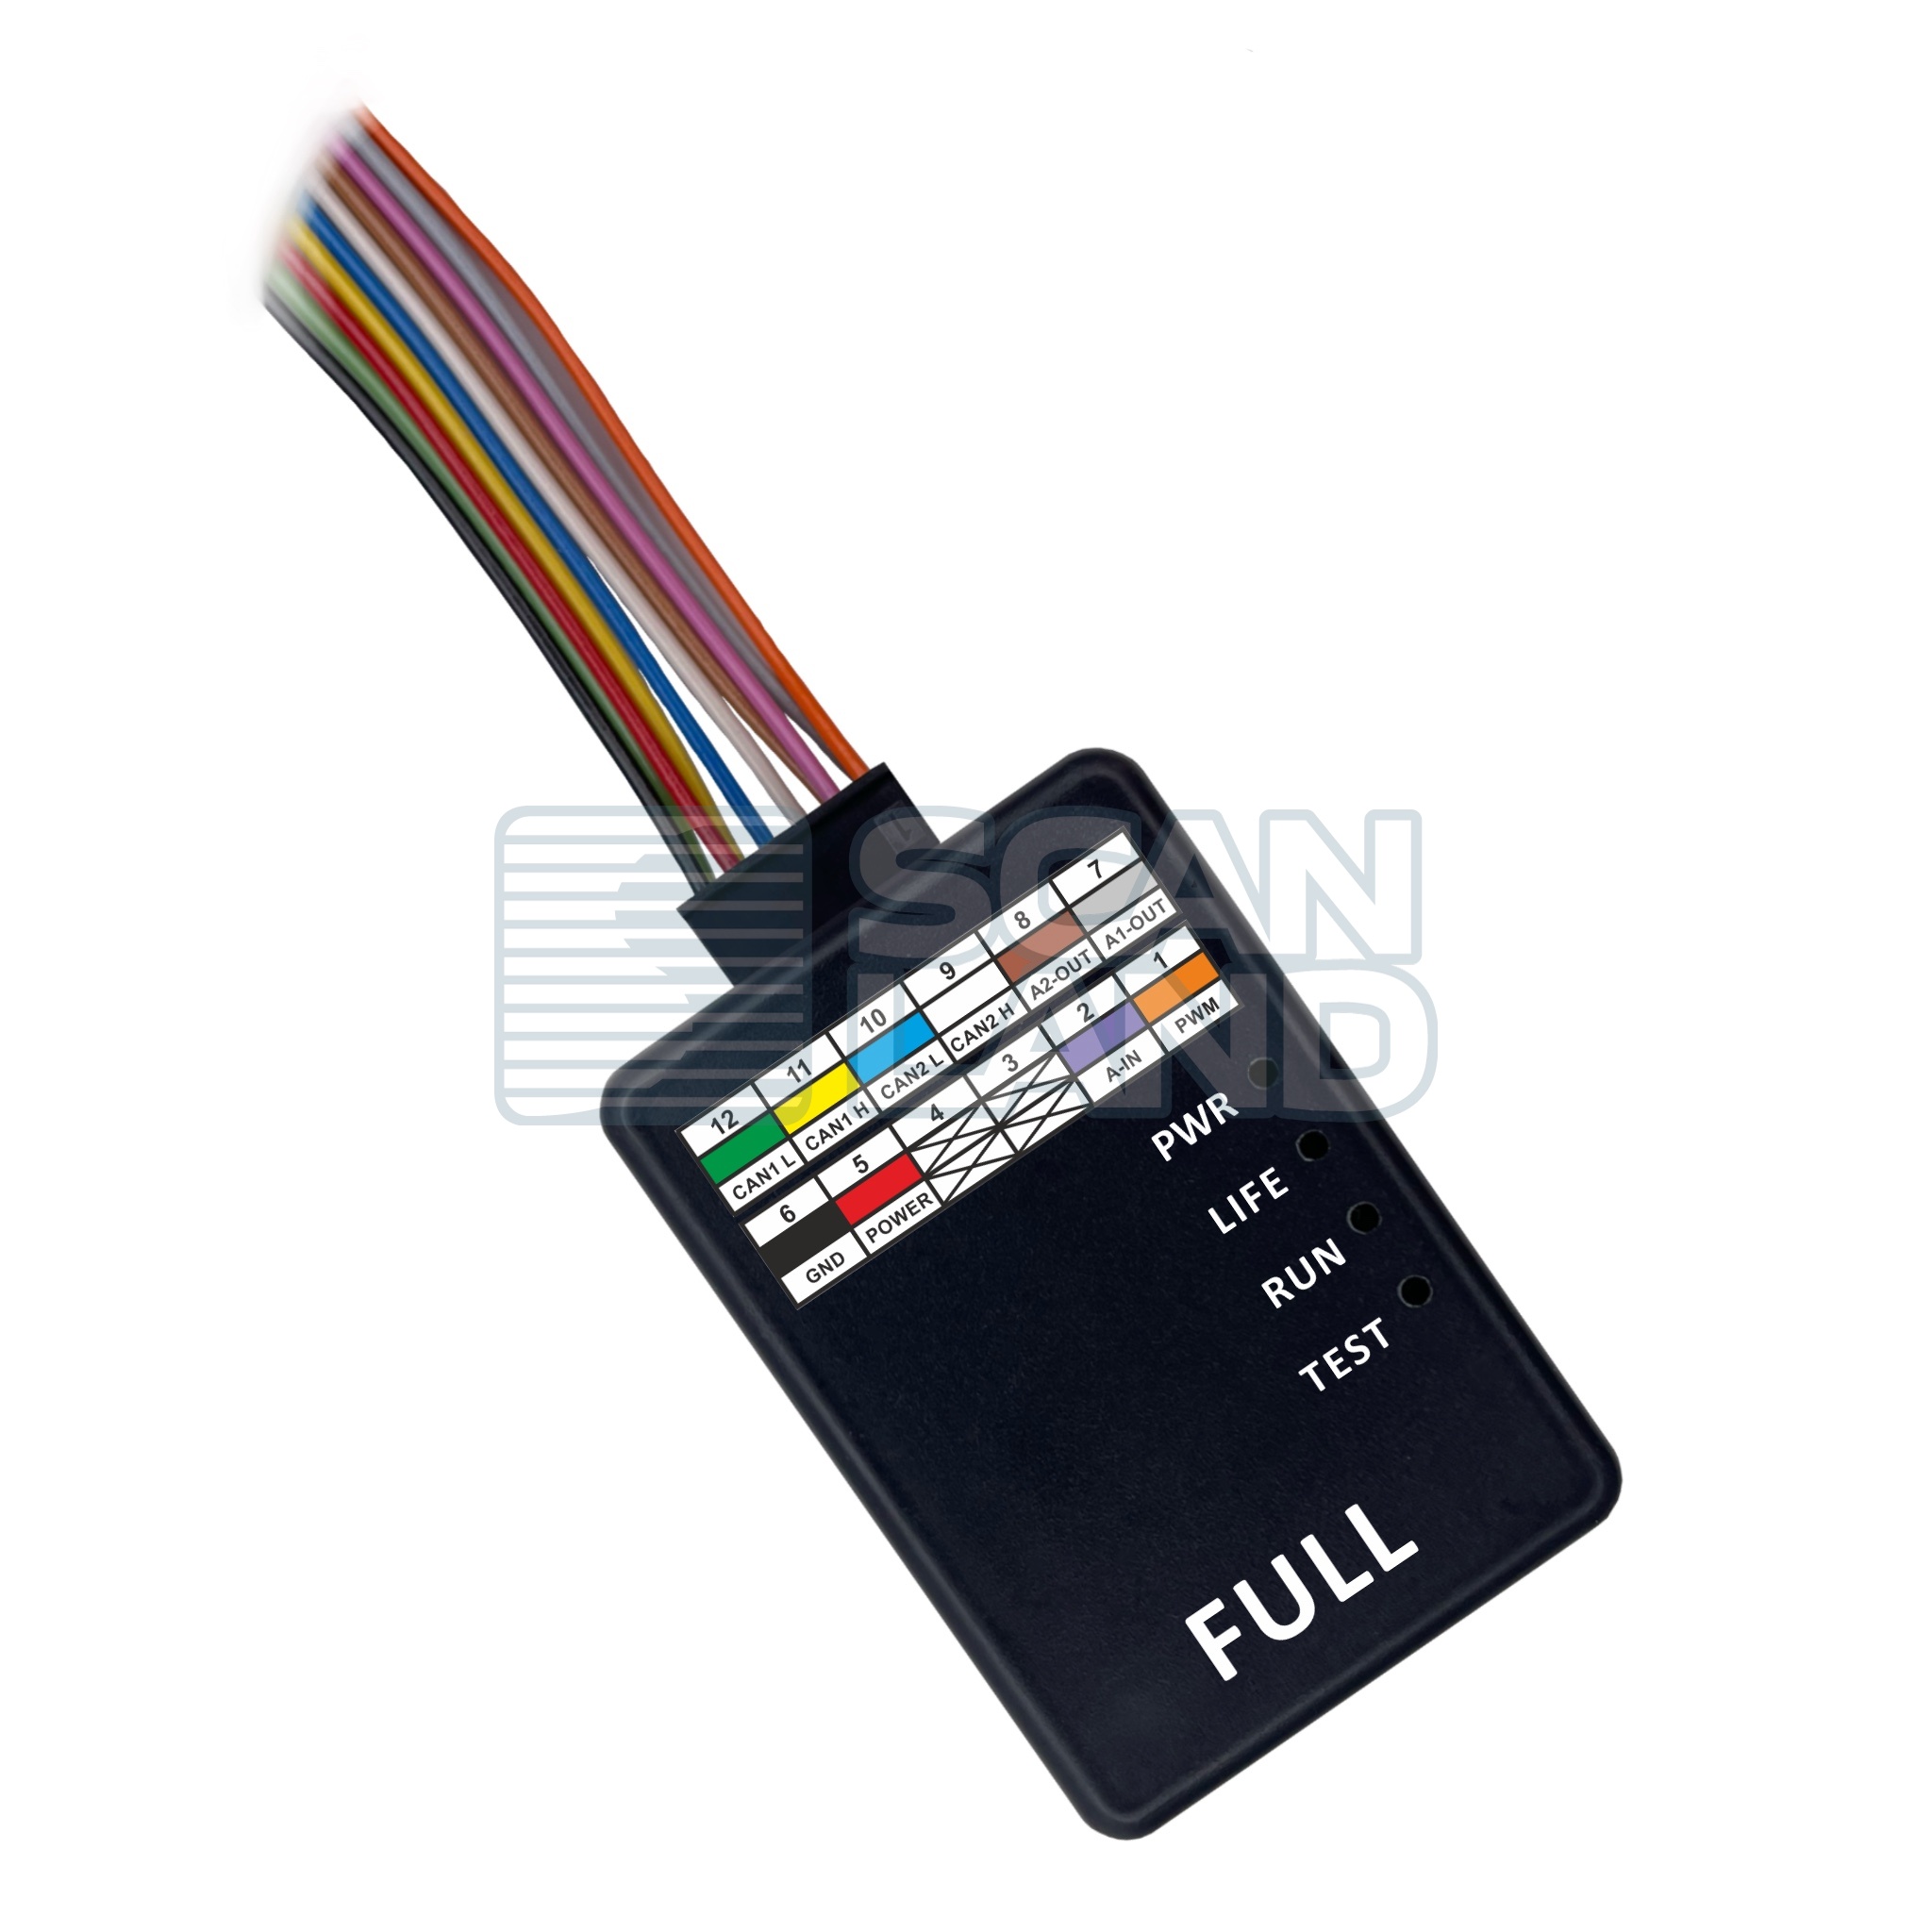  AdBlue Emu-Max Full v.11.04   Next    Emitec, 